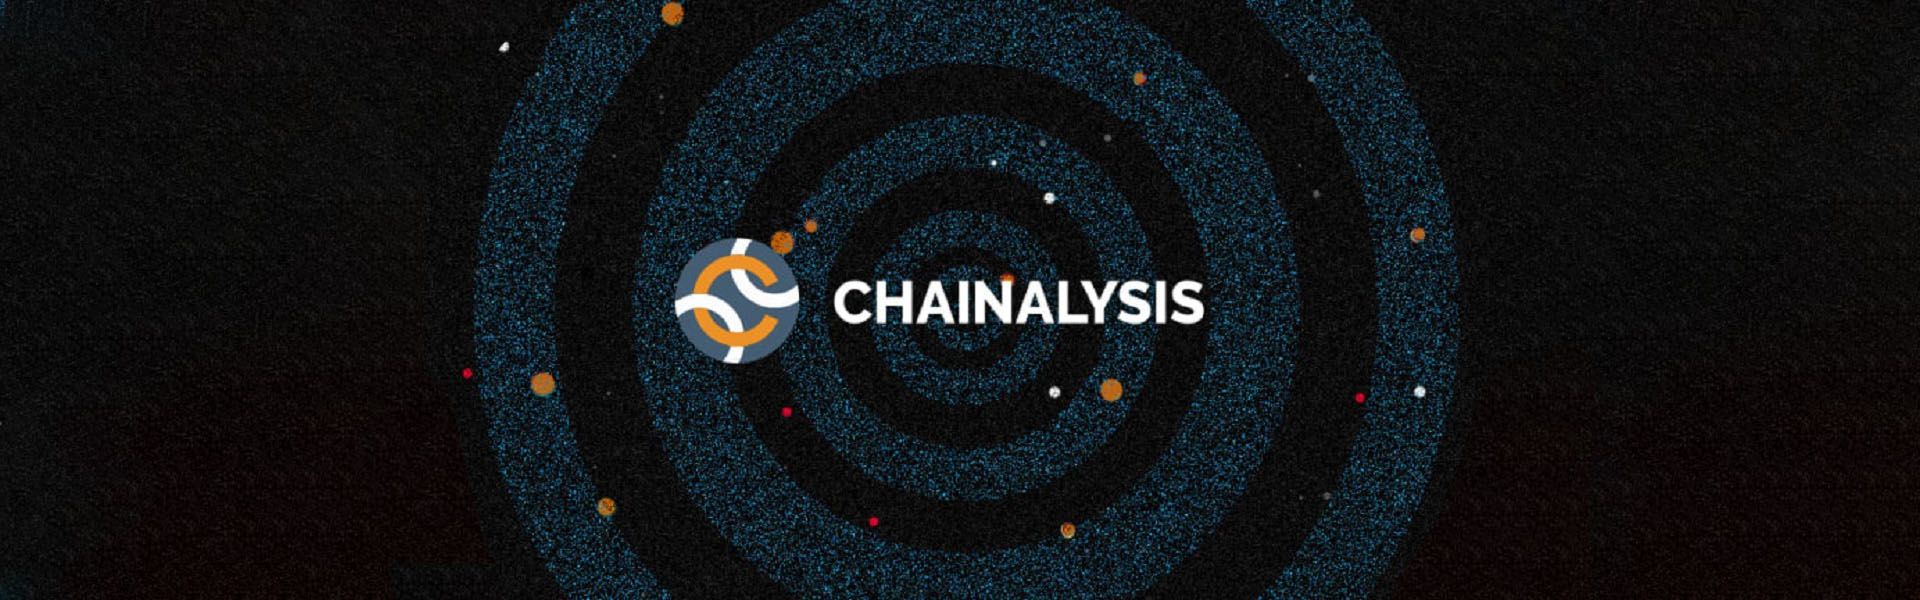 Chainalysis – афера у галузі криміналістичного аналізу блокчейну?